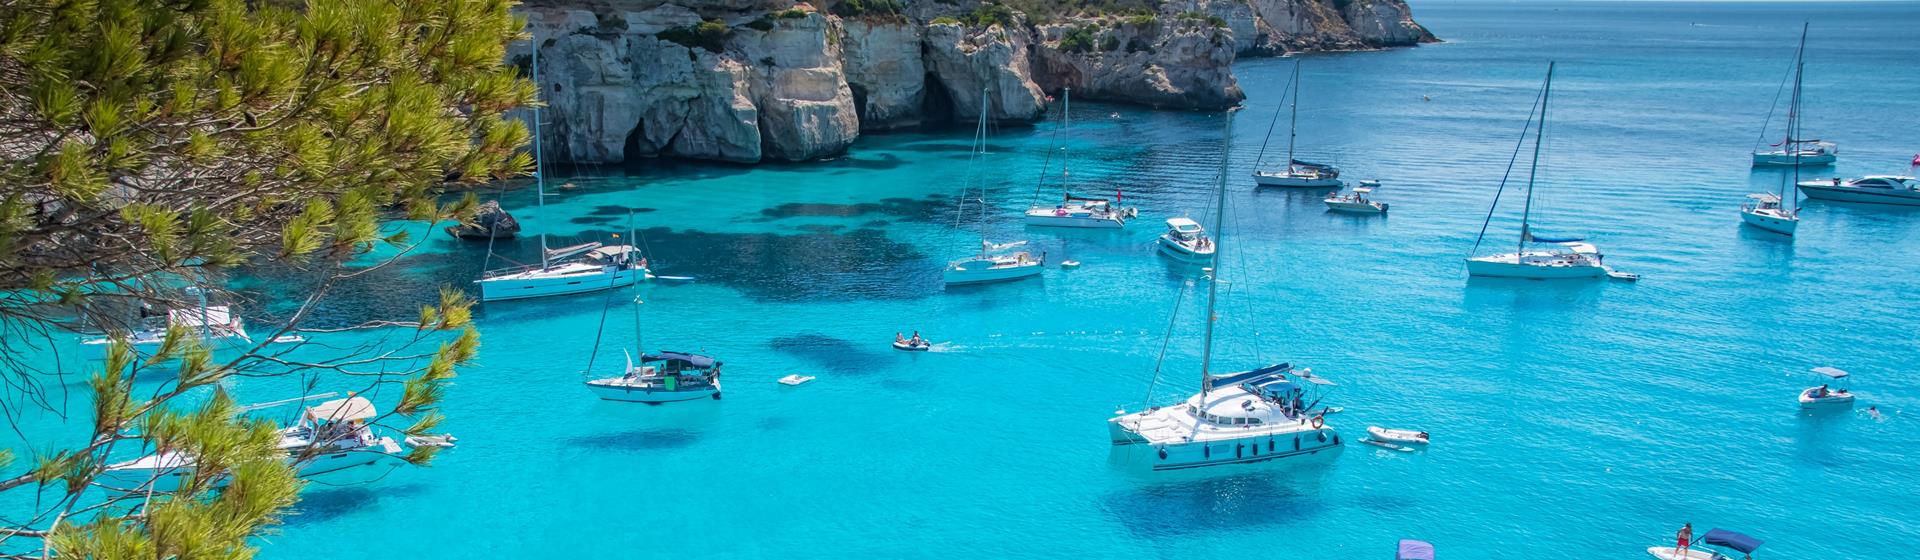 Holidays to Menorca